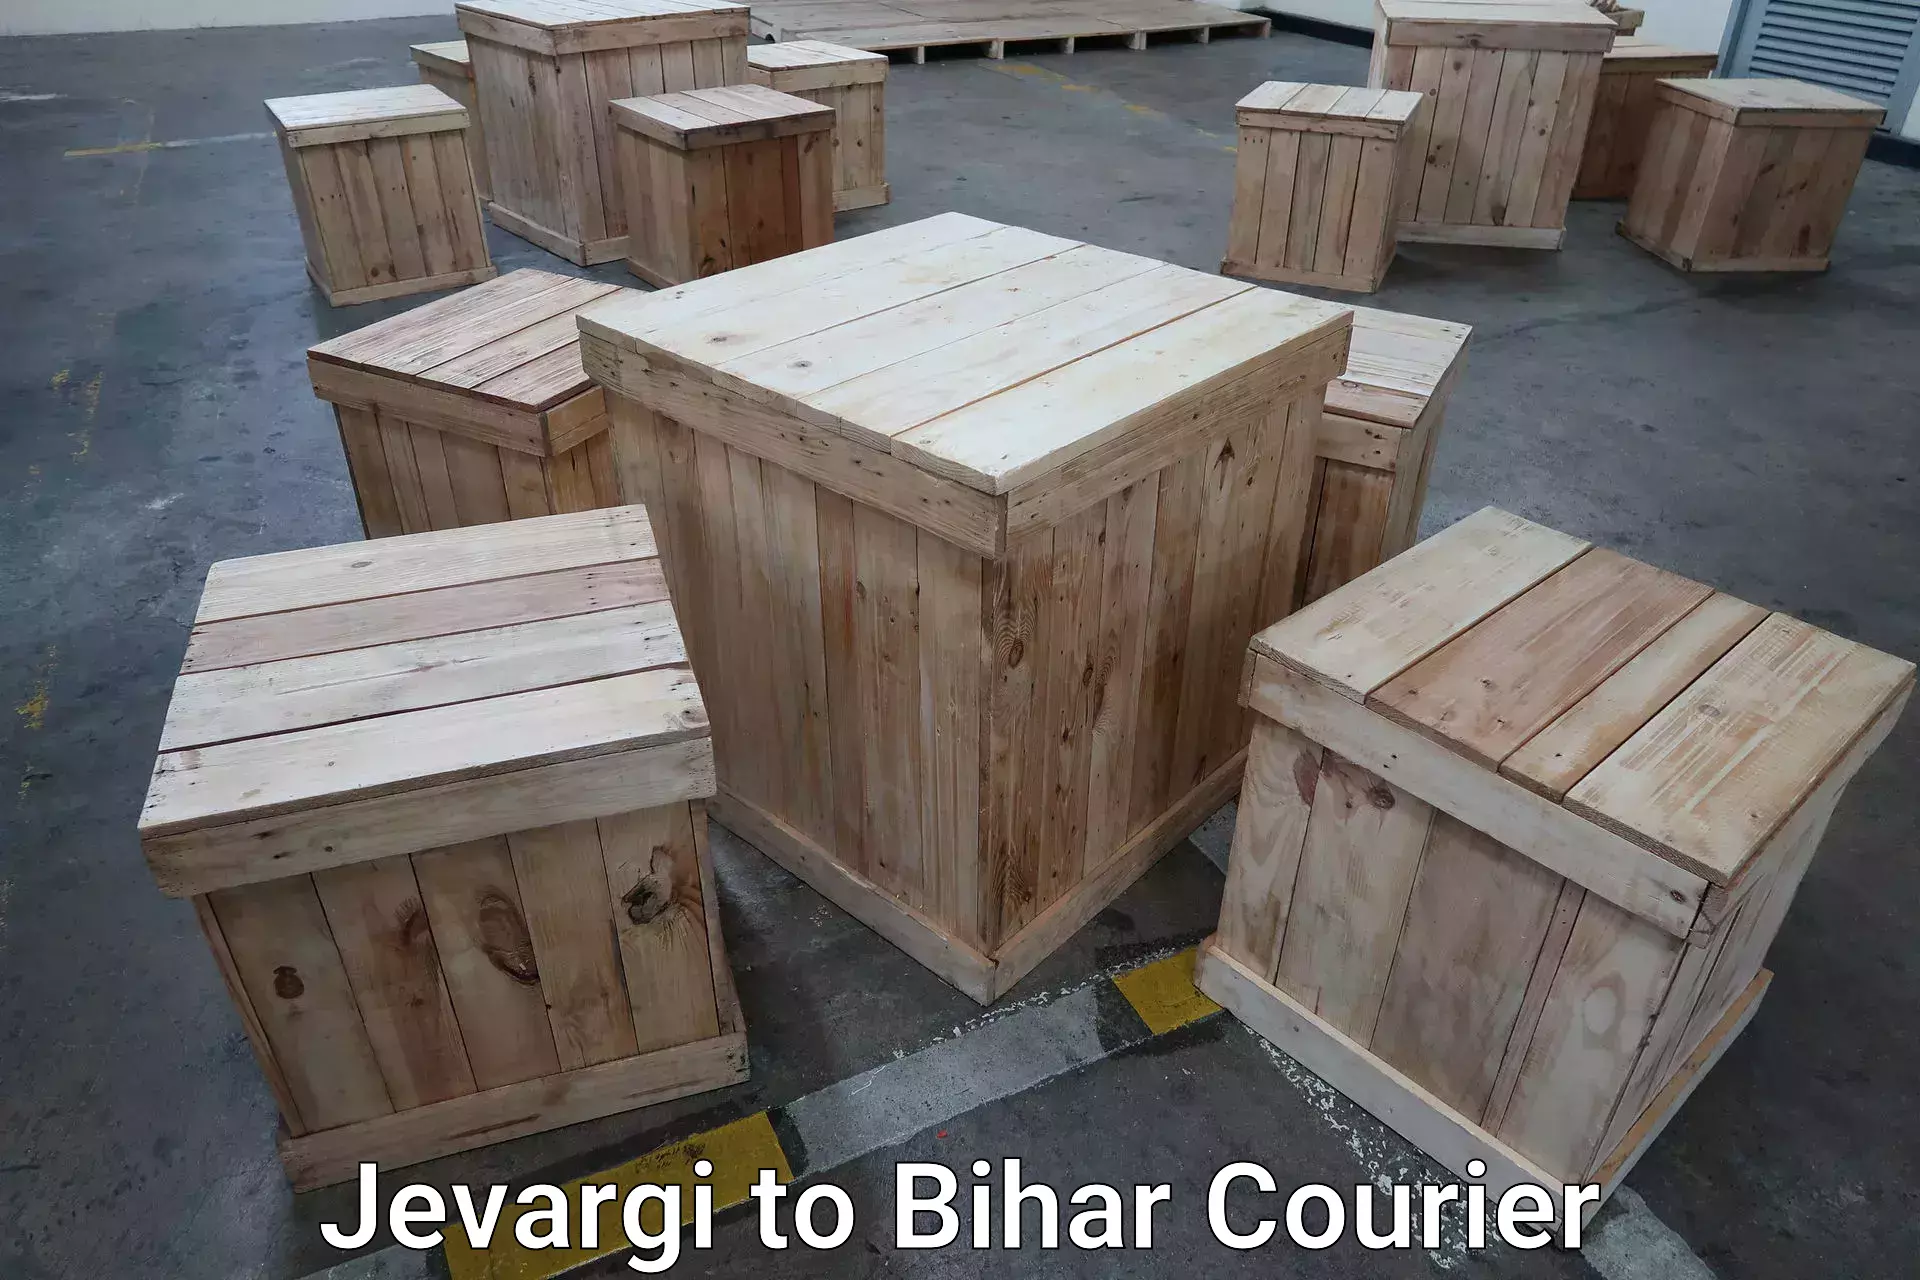 Luggage transport consultancy Jevargi to Aurai